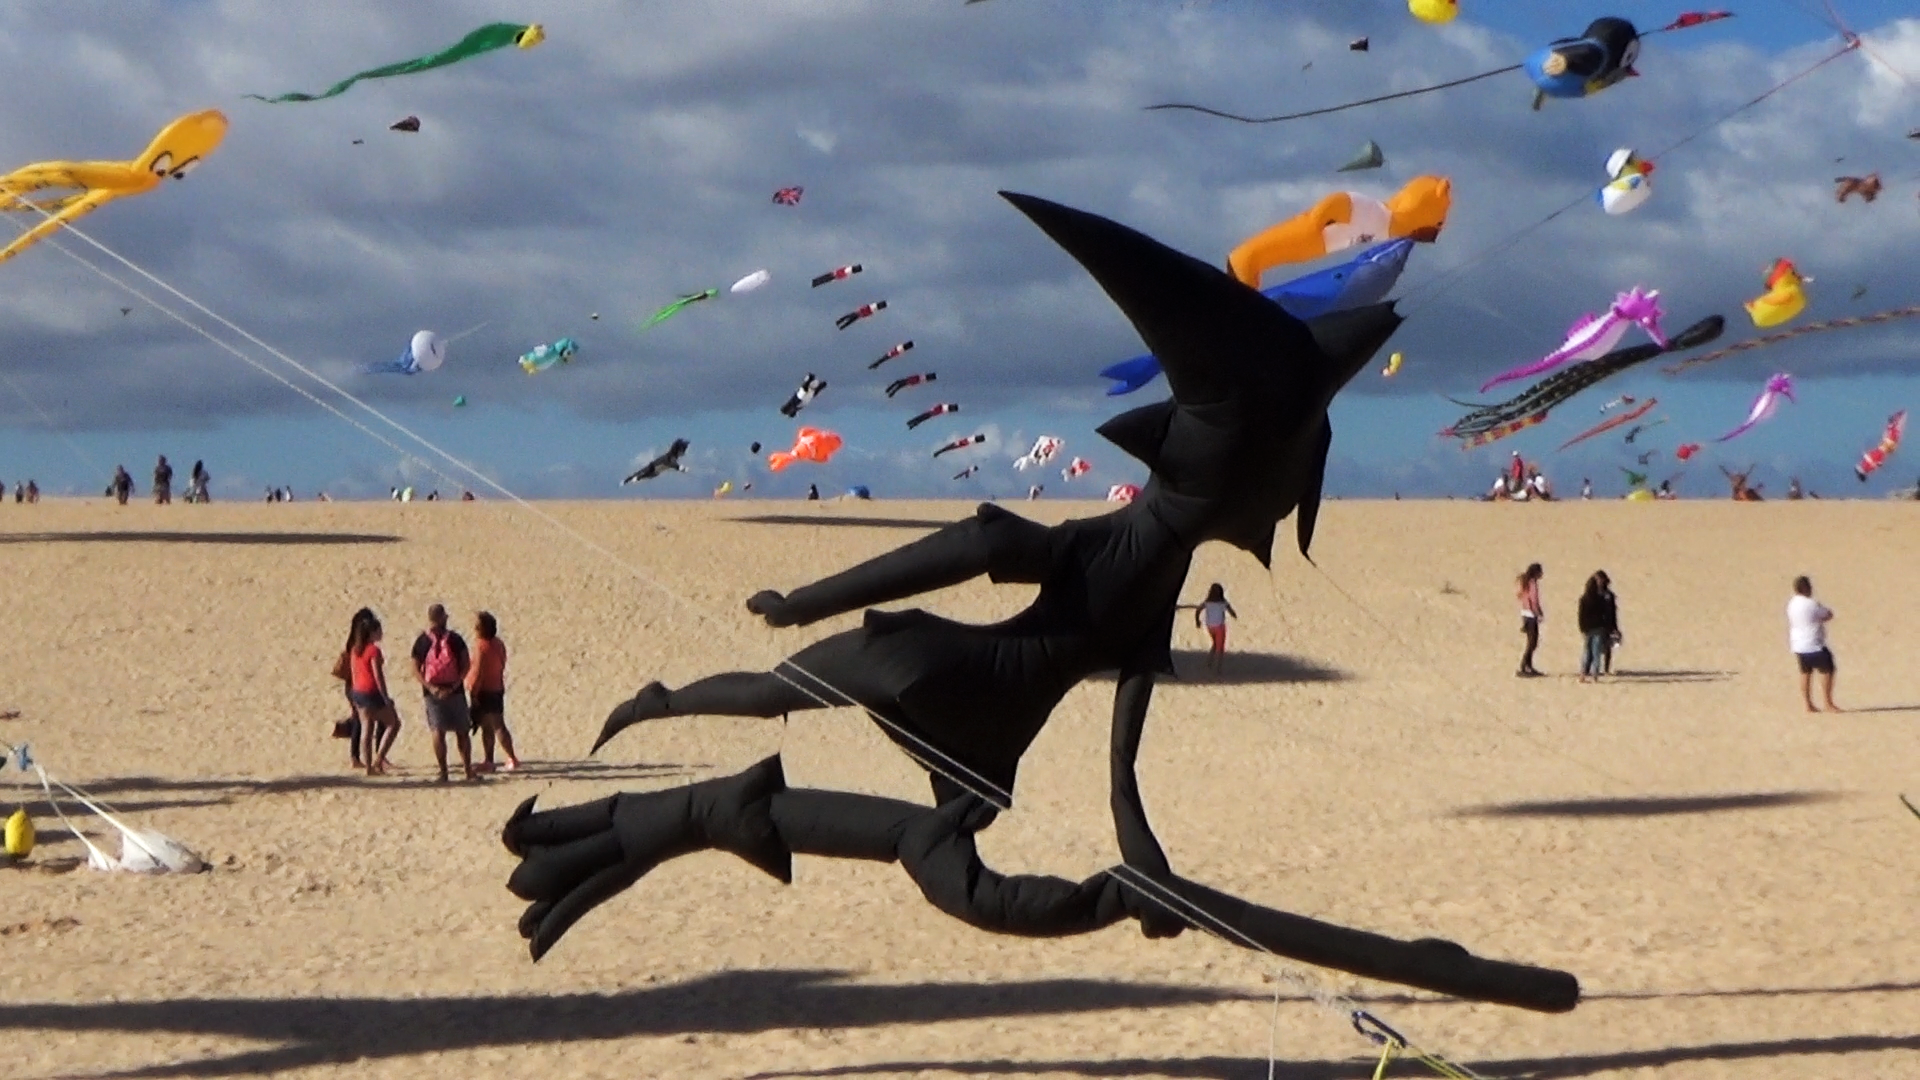 Fuerteventura Kite Festival 2016